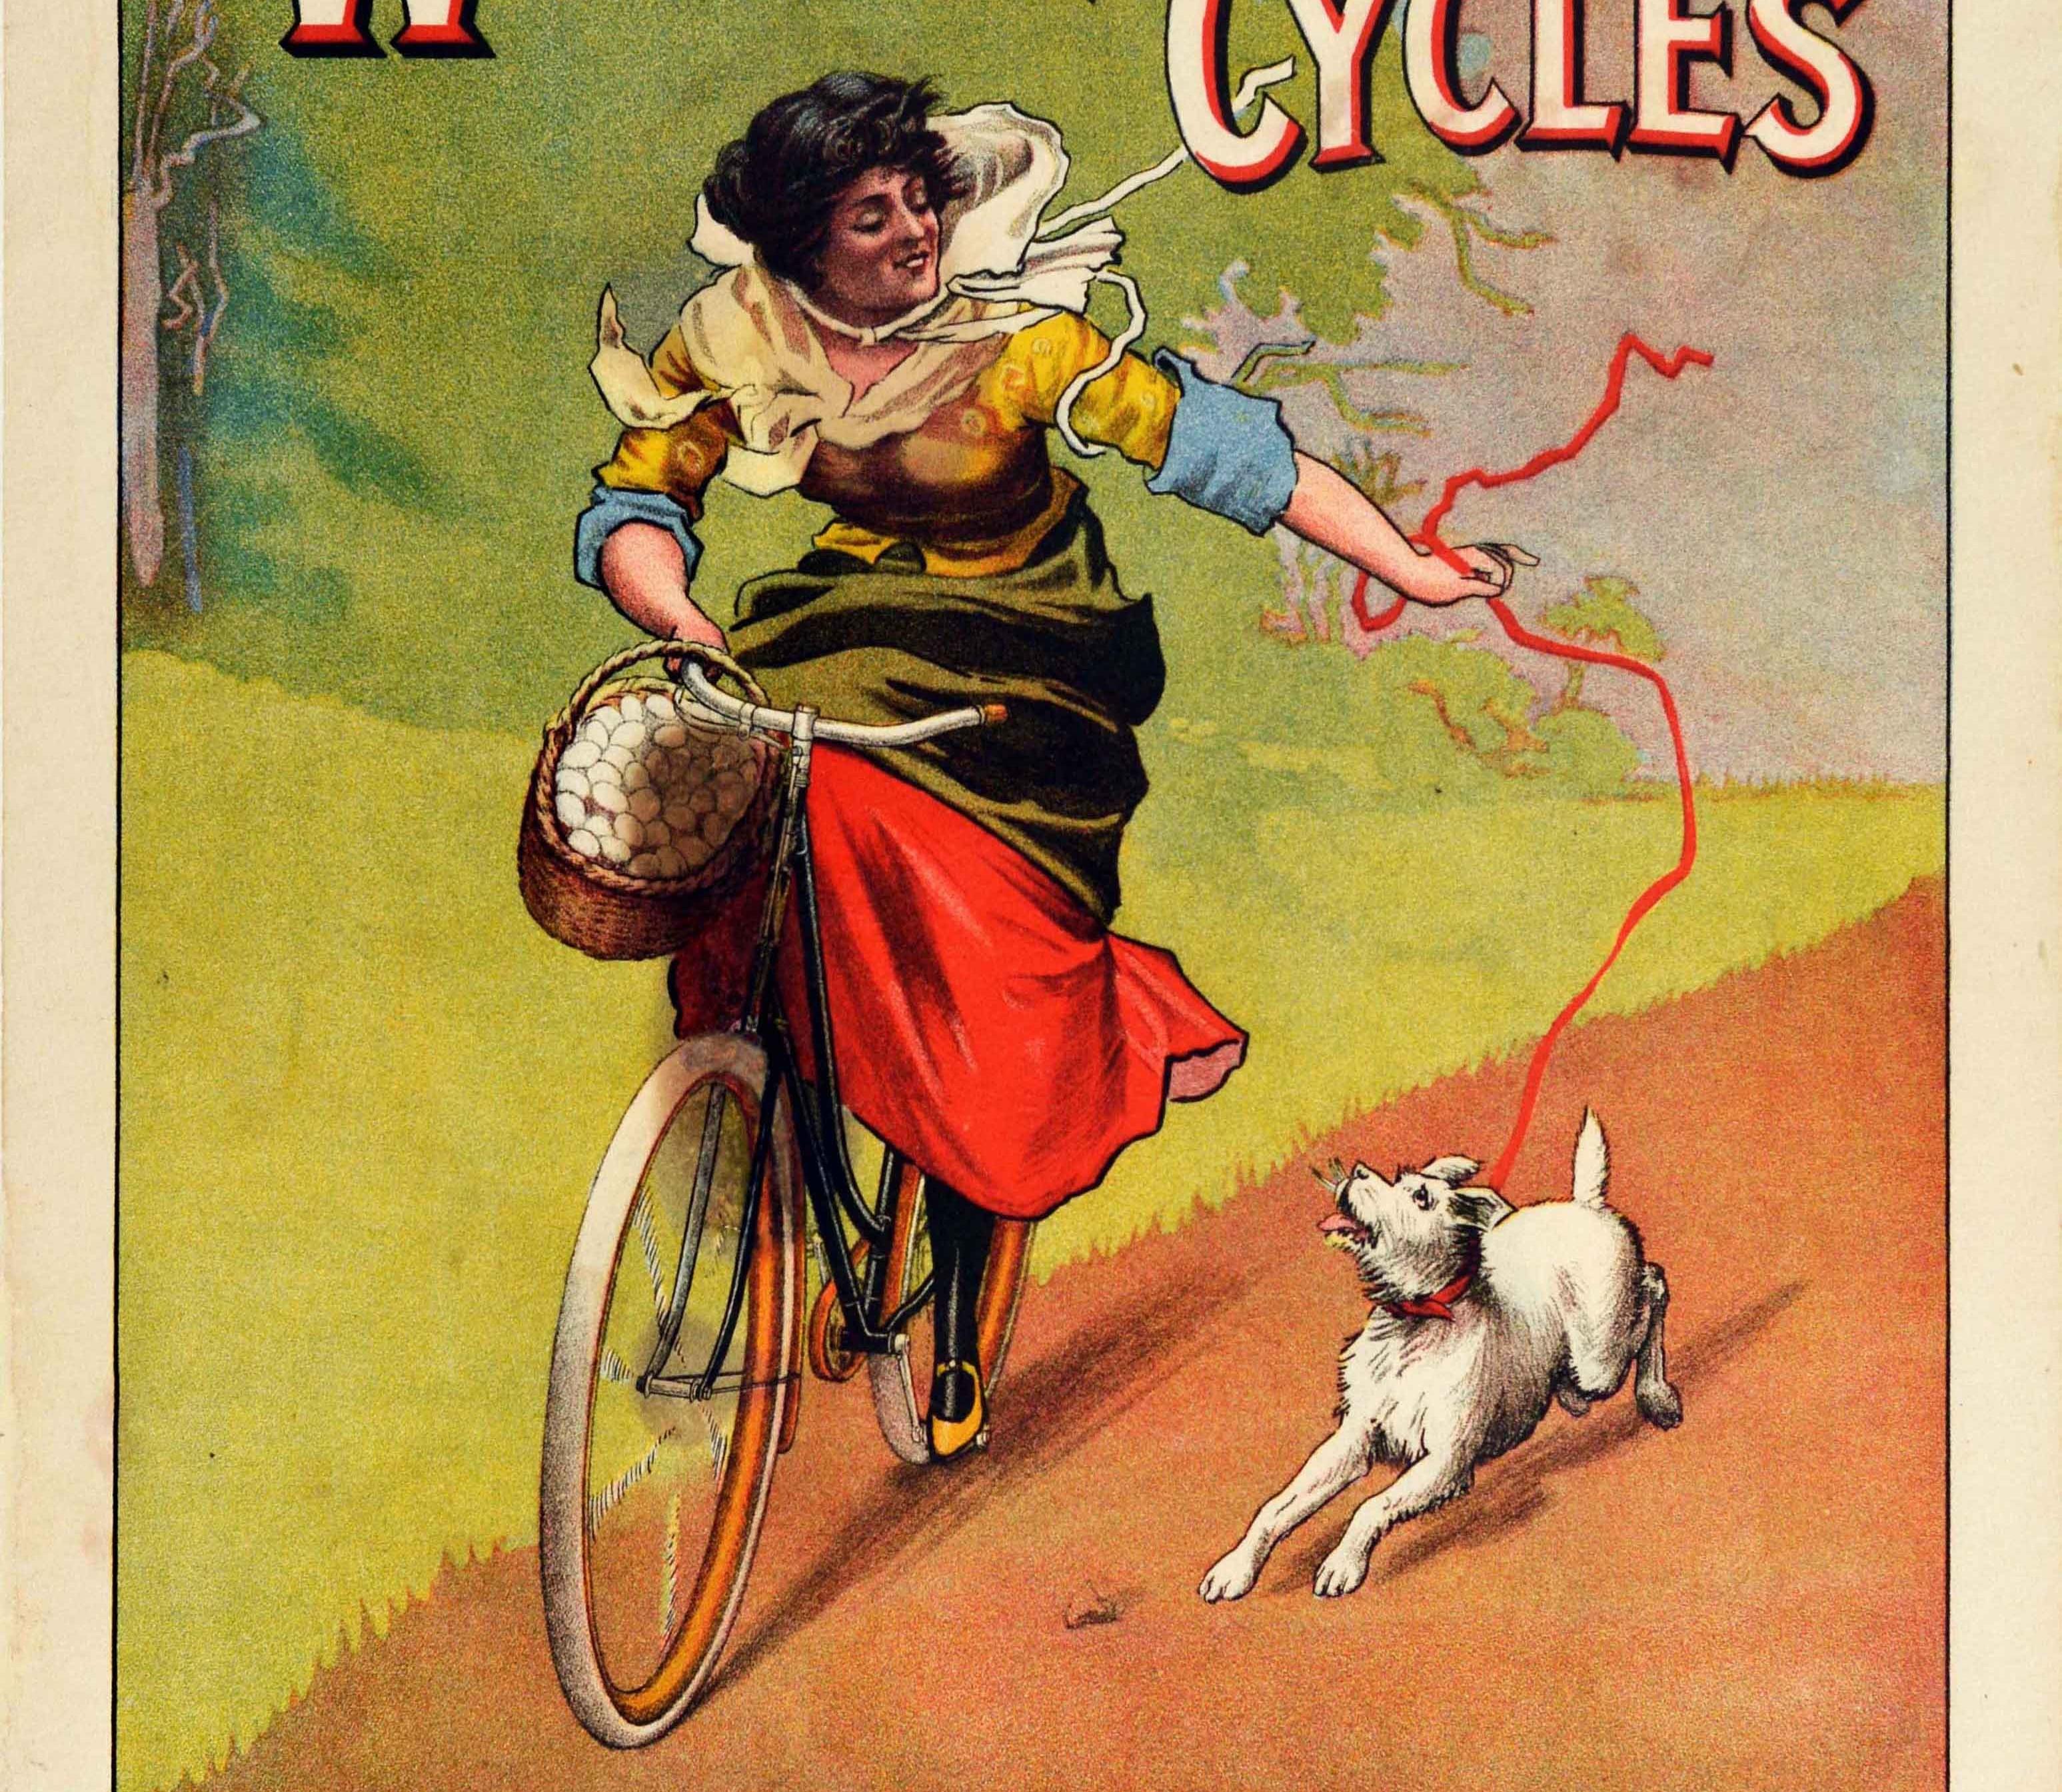 Originales antikes Werbeplakat für The White Cycles White Sewing Machine Cie London et Paris mit einem großartigen Bild einer lächelnden jungen Dame in einem farbenfrohen Kleid auf einem Fahrrad mit einem Korb voller Eier auf dem Lenker und einem